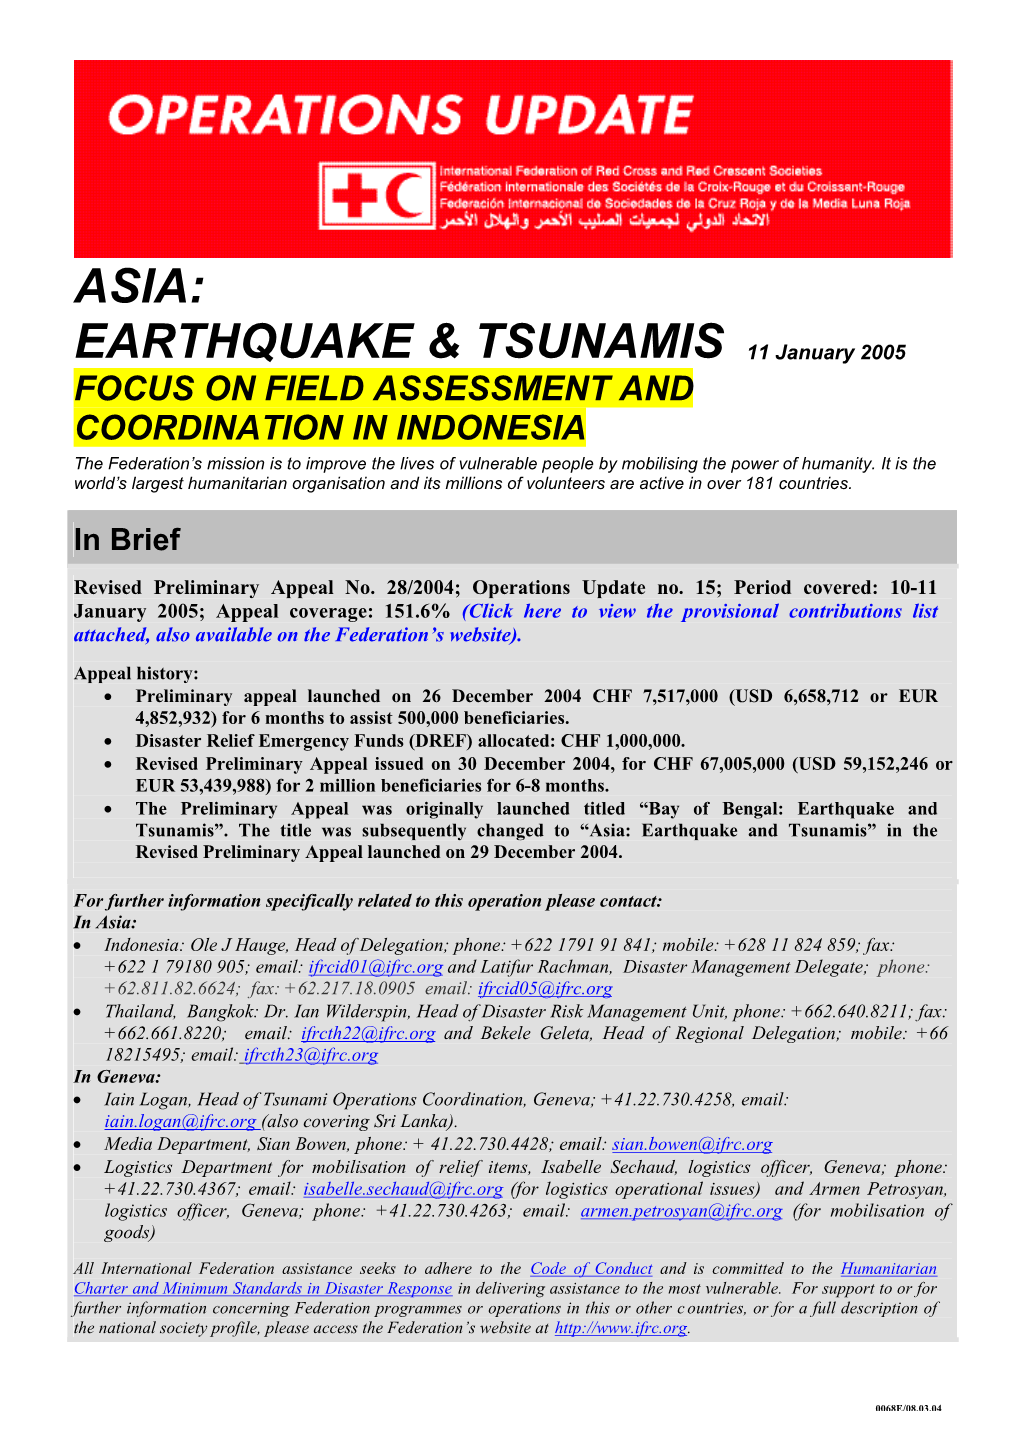 Asia: Earthquake & Tsunamis